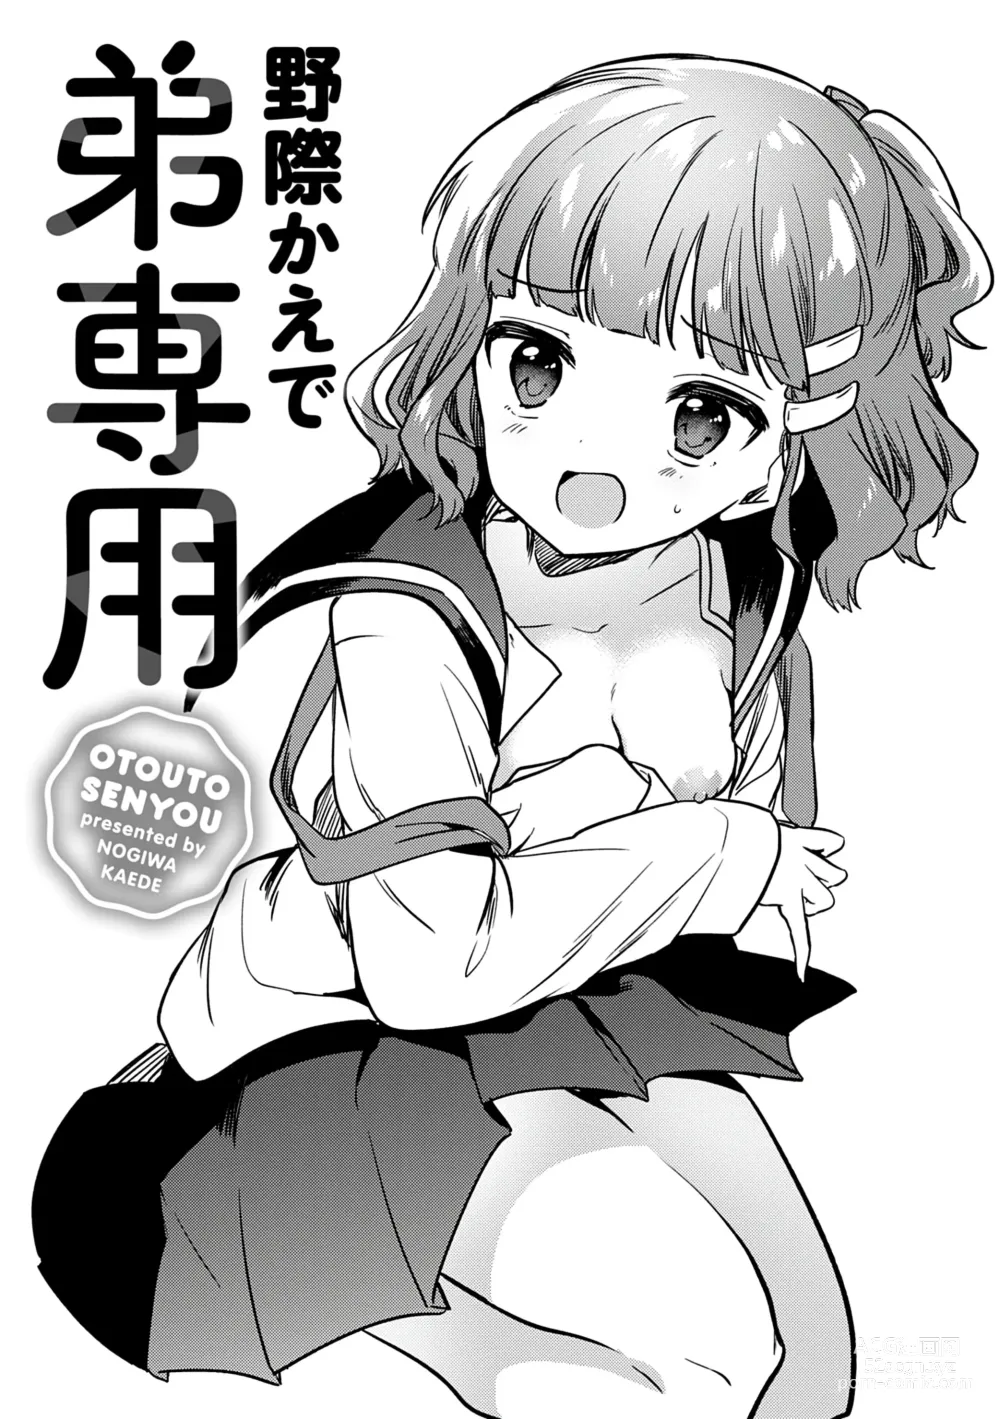 Page 3 of manga Otouto Senyou